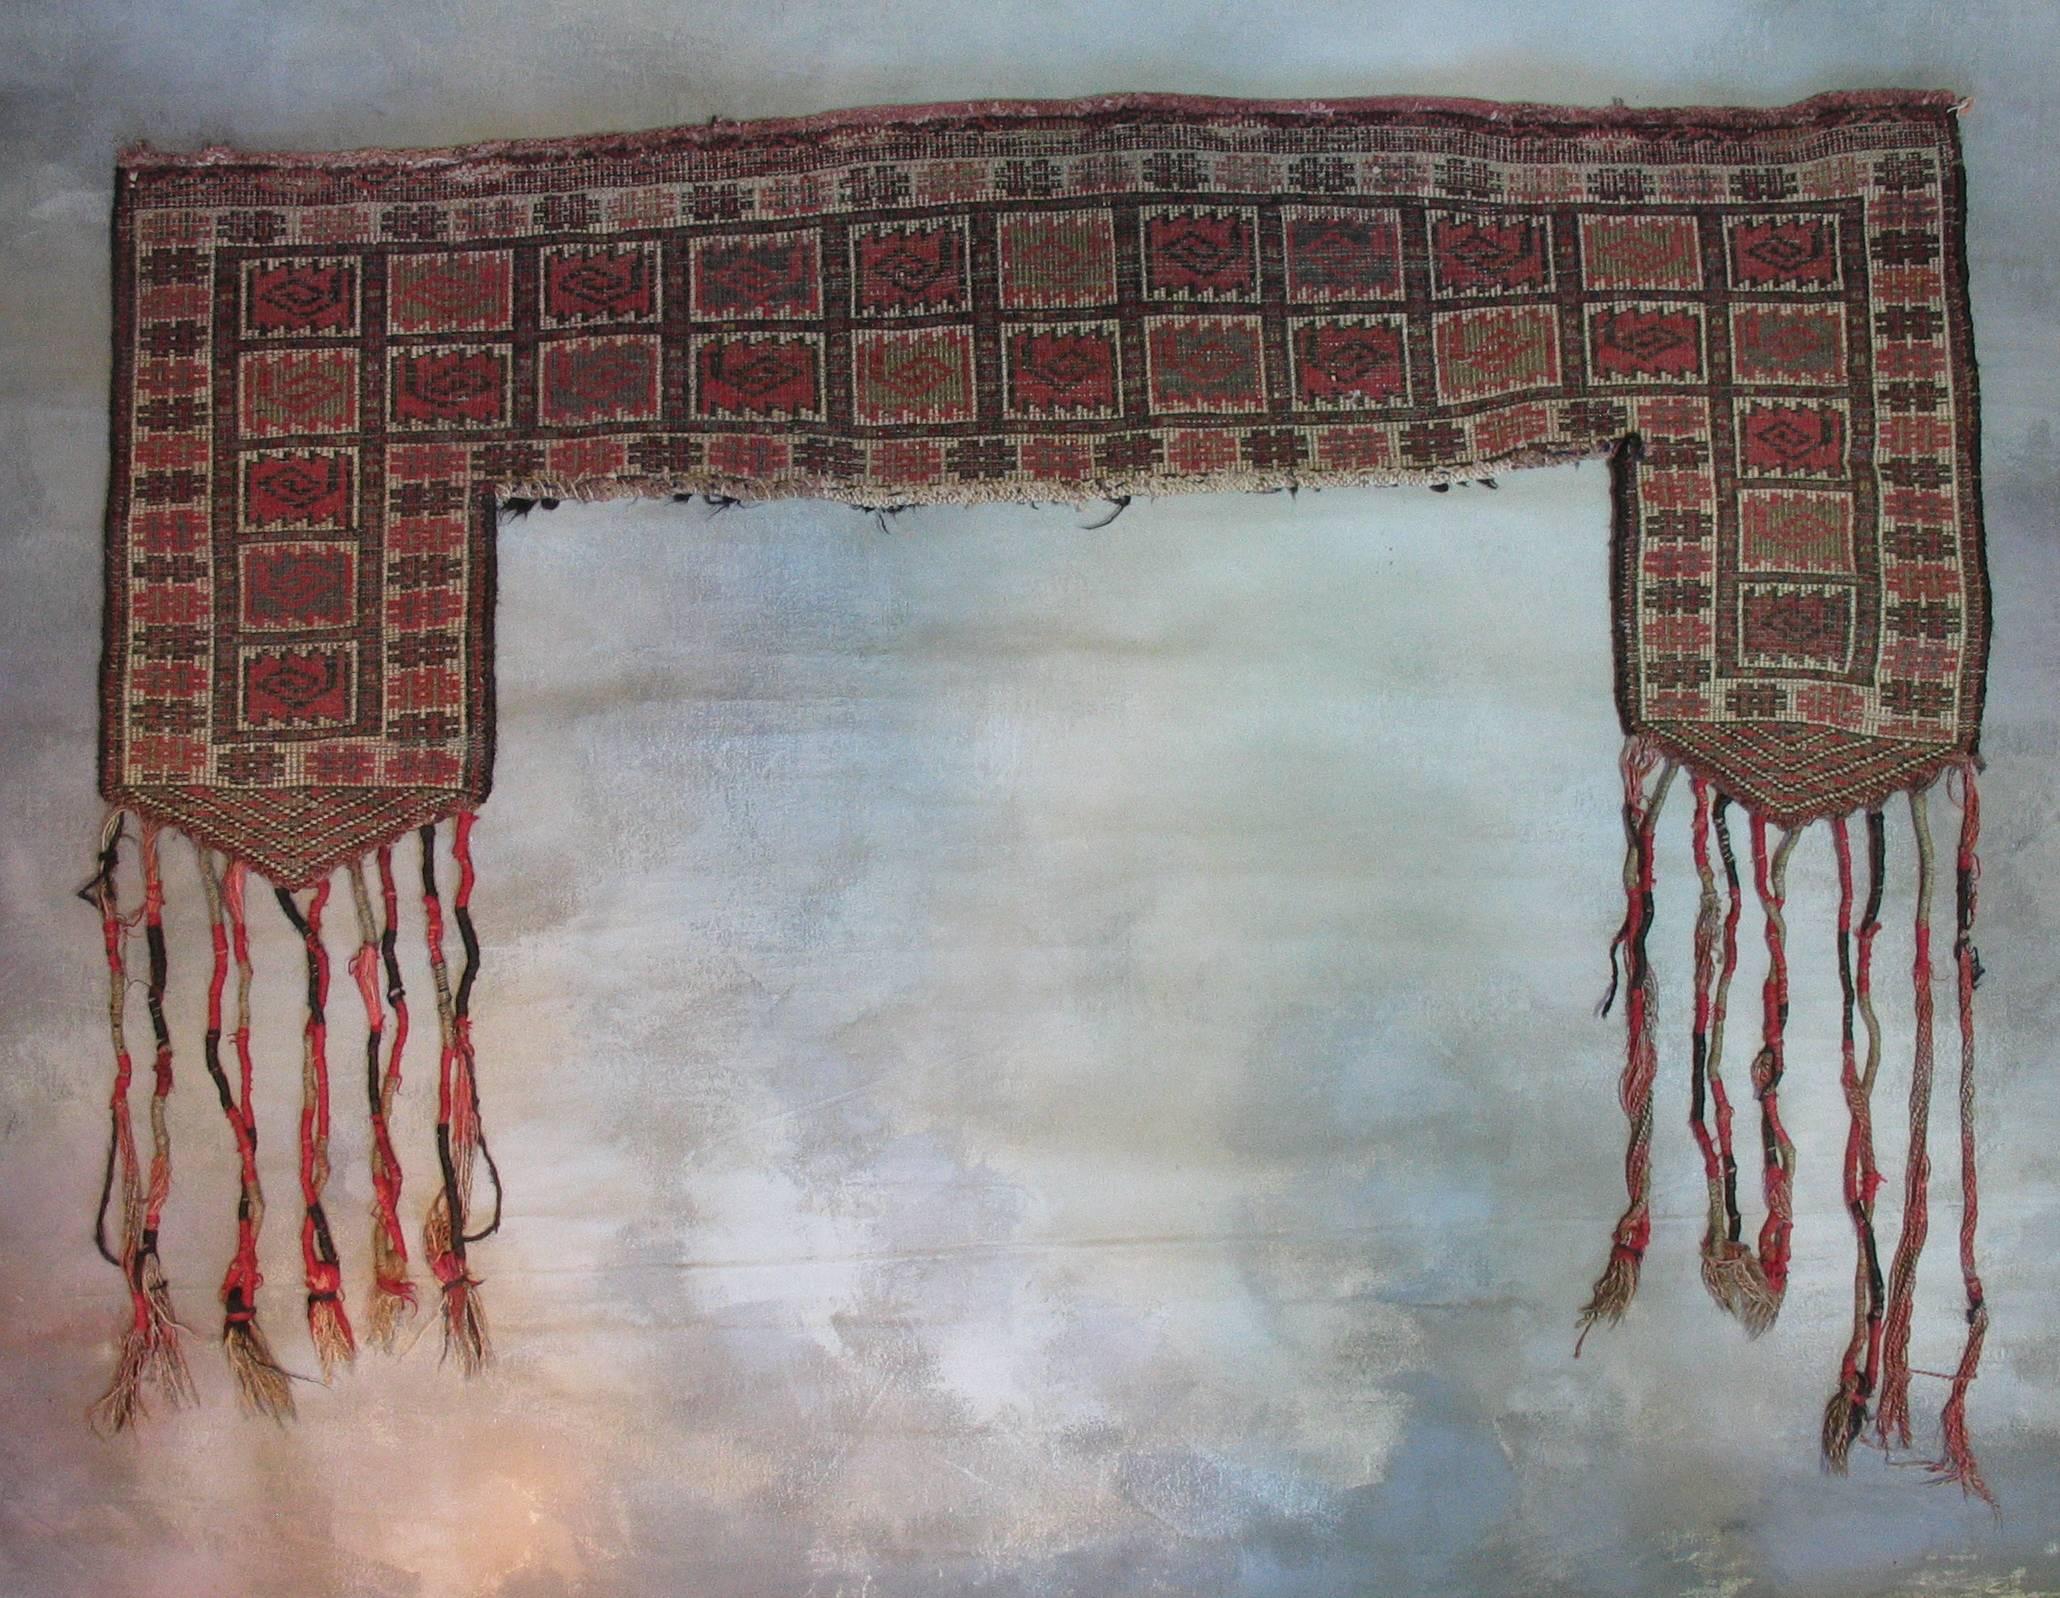 Tapis en laine Ersari Kapunuk du Turkménistan ou décoration de porte d'entrée, deuxième moitié du 19e siècle, poil de laine, chaîne de laine et trame de laine, de couleur rouge et terre, avec de longs glands décoratifs. Il est utilisé pour la